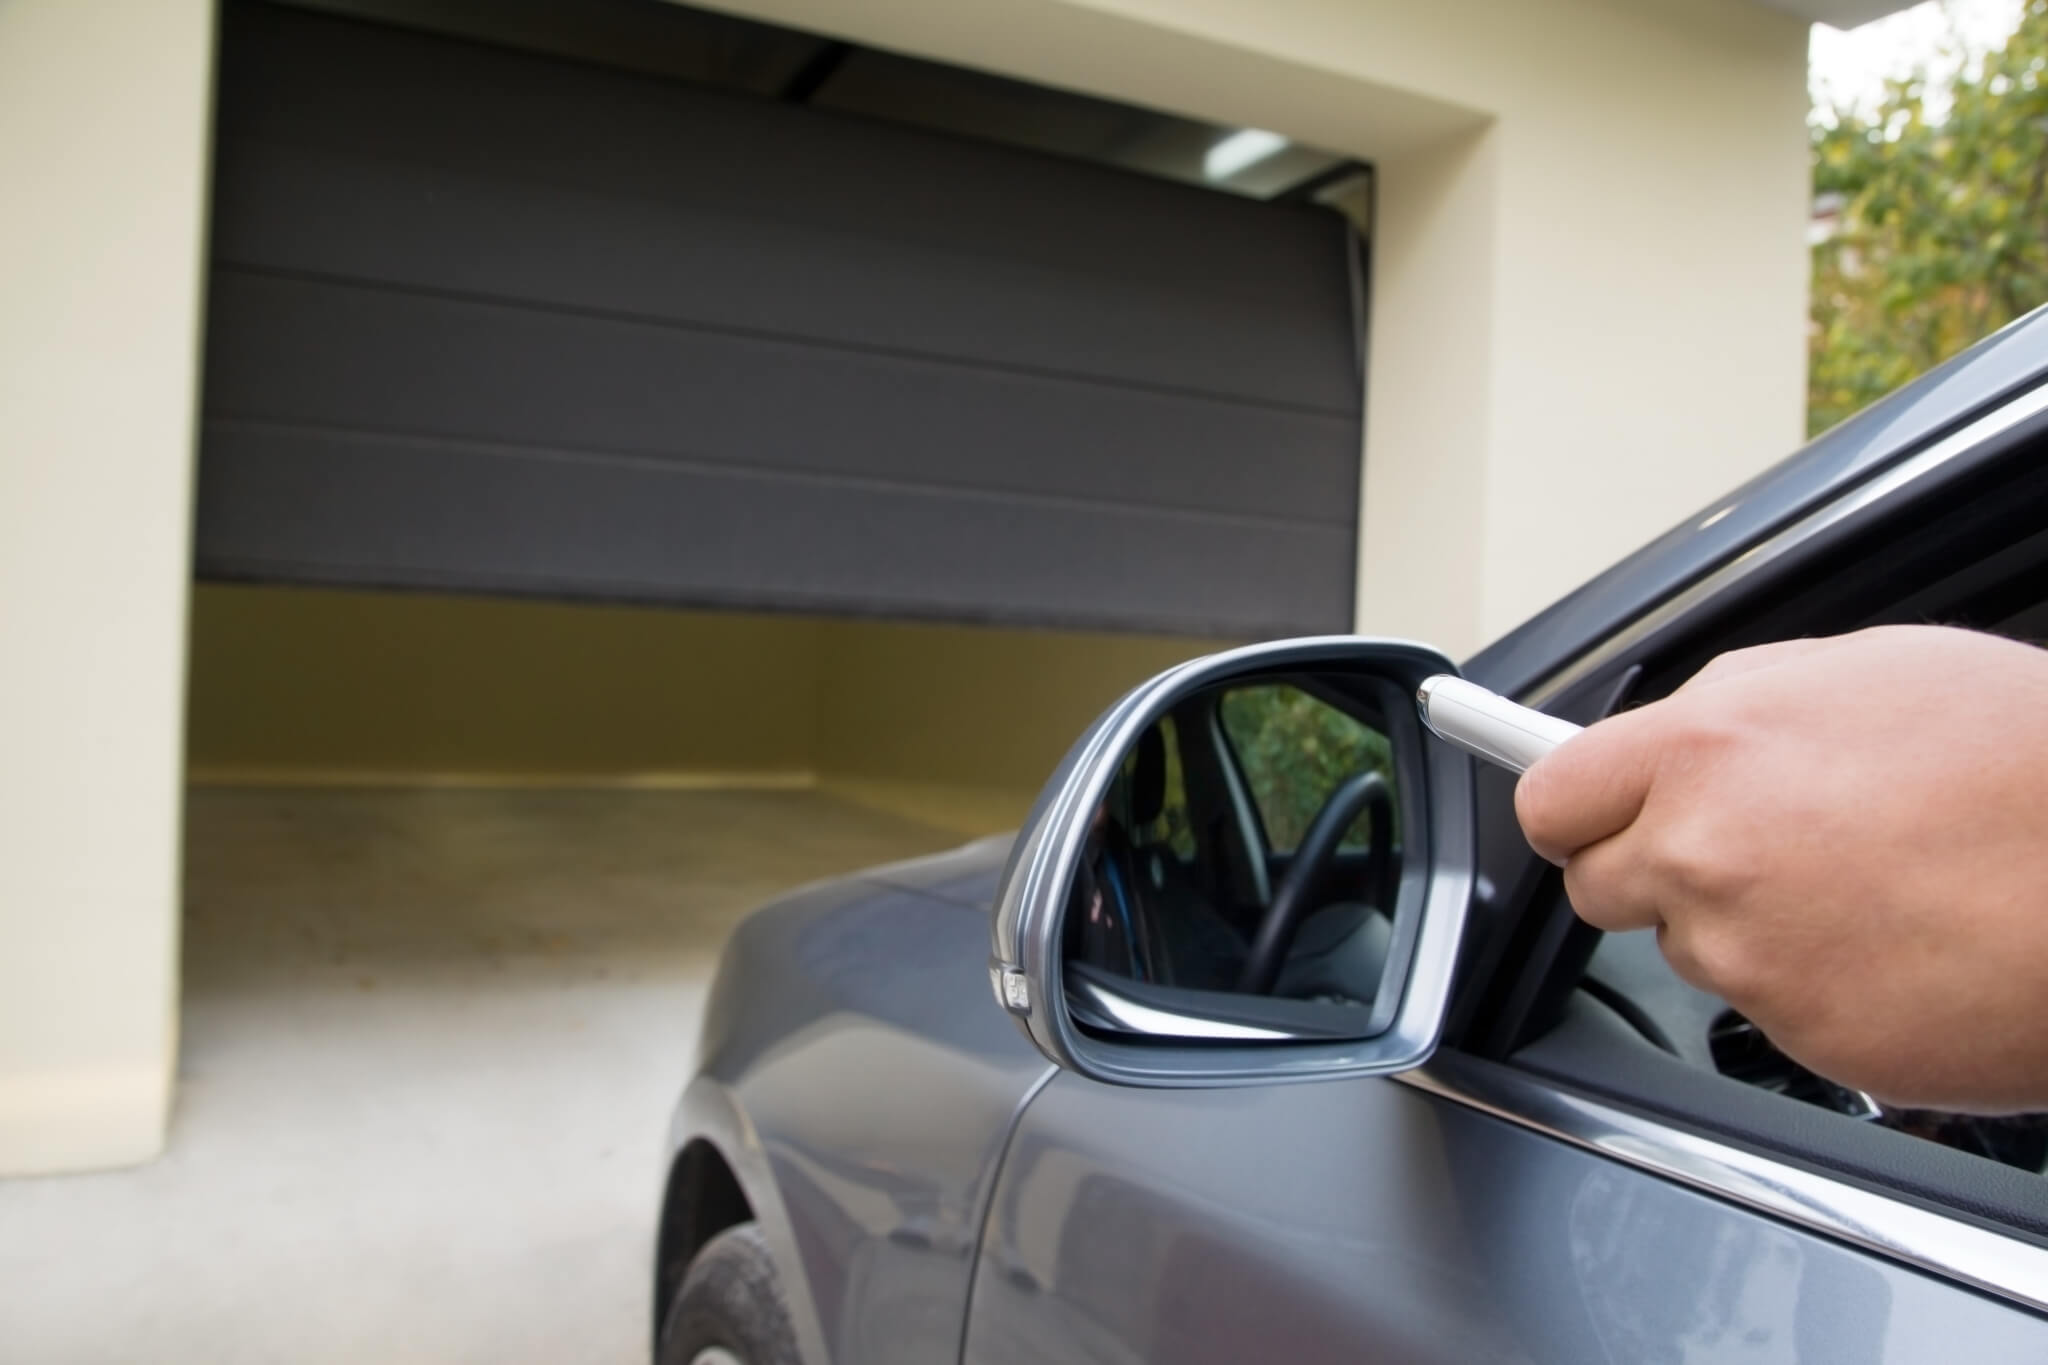 How to repair a garage door sensor